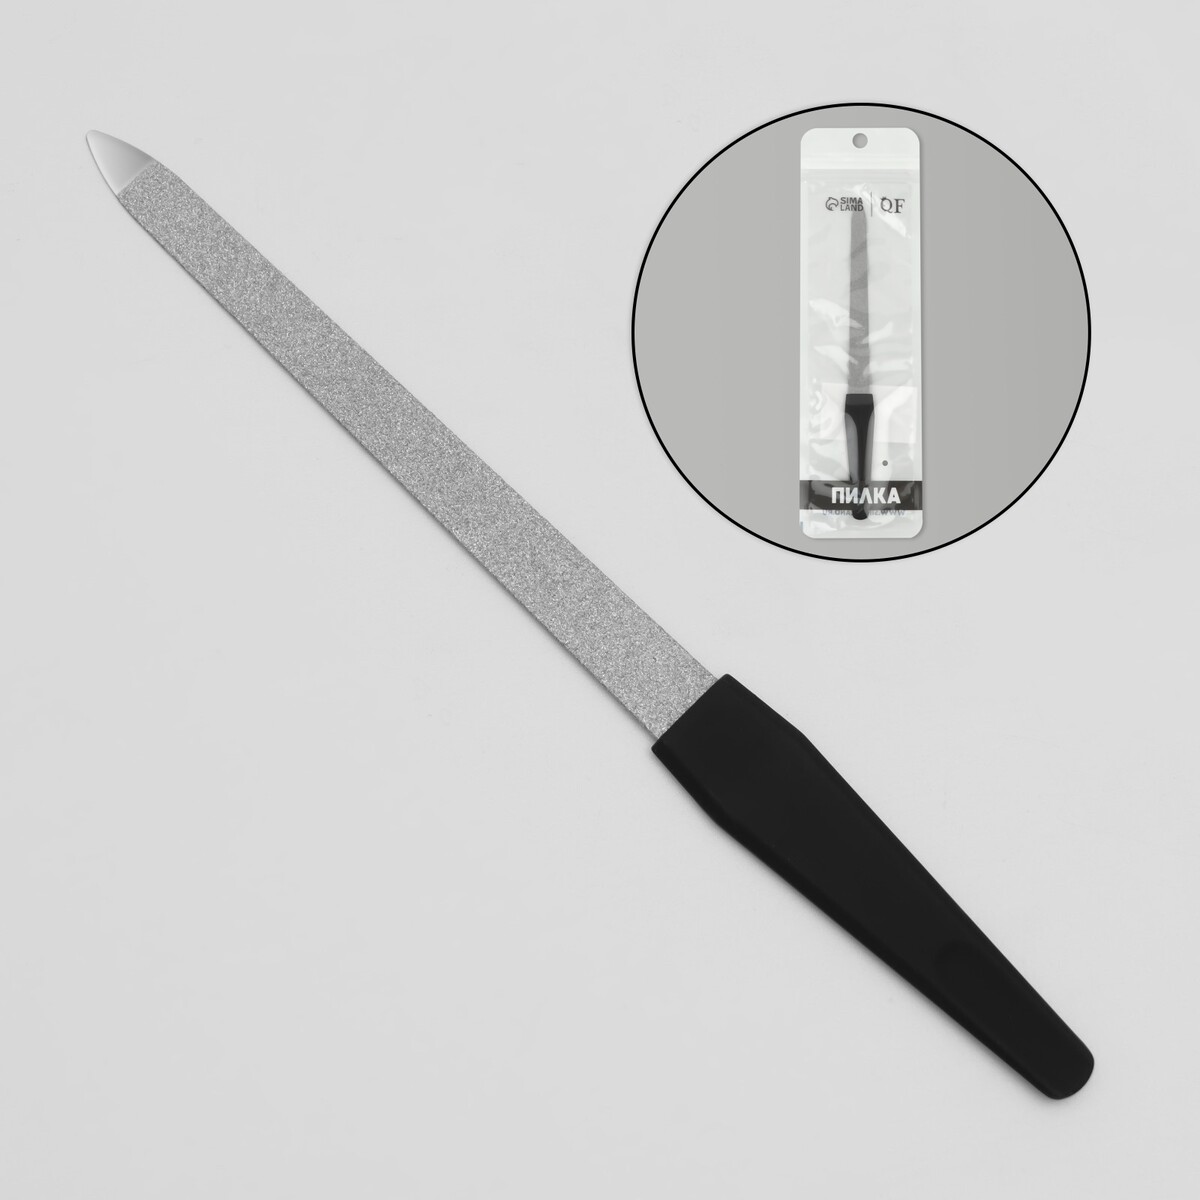 Пилка металлическая для ногтей, прорезиненная ручка, 17 см, цвет серебристый/черный пилка металлическая для ногтей 12 см на блистере серебристый